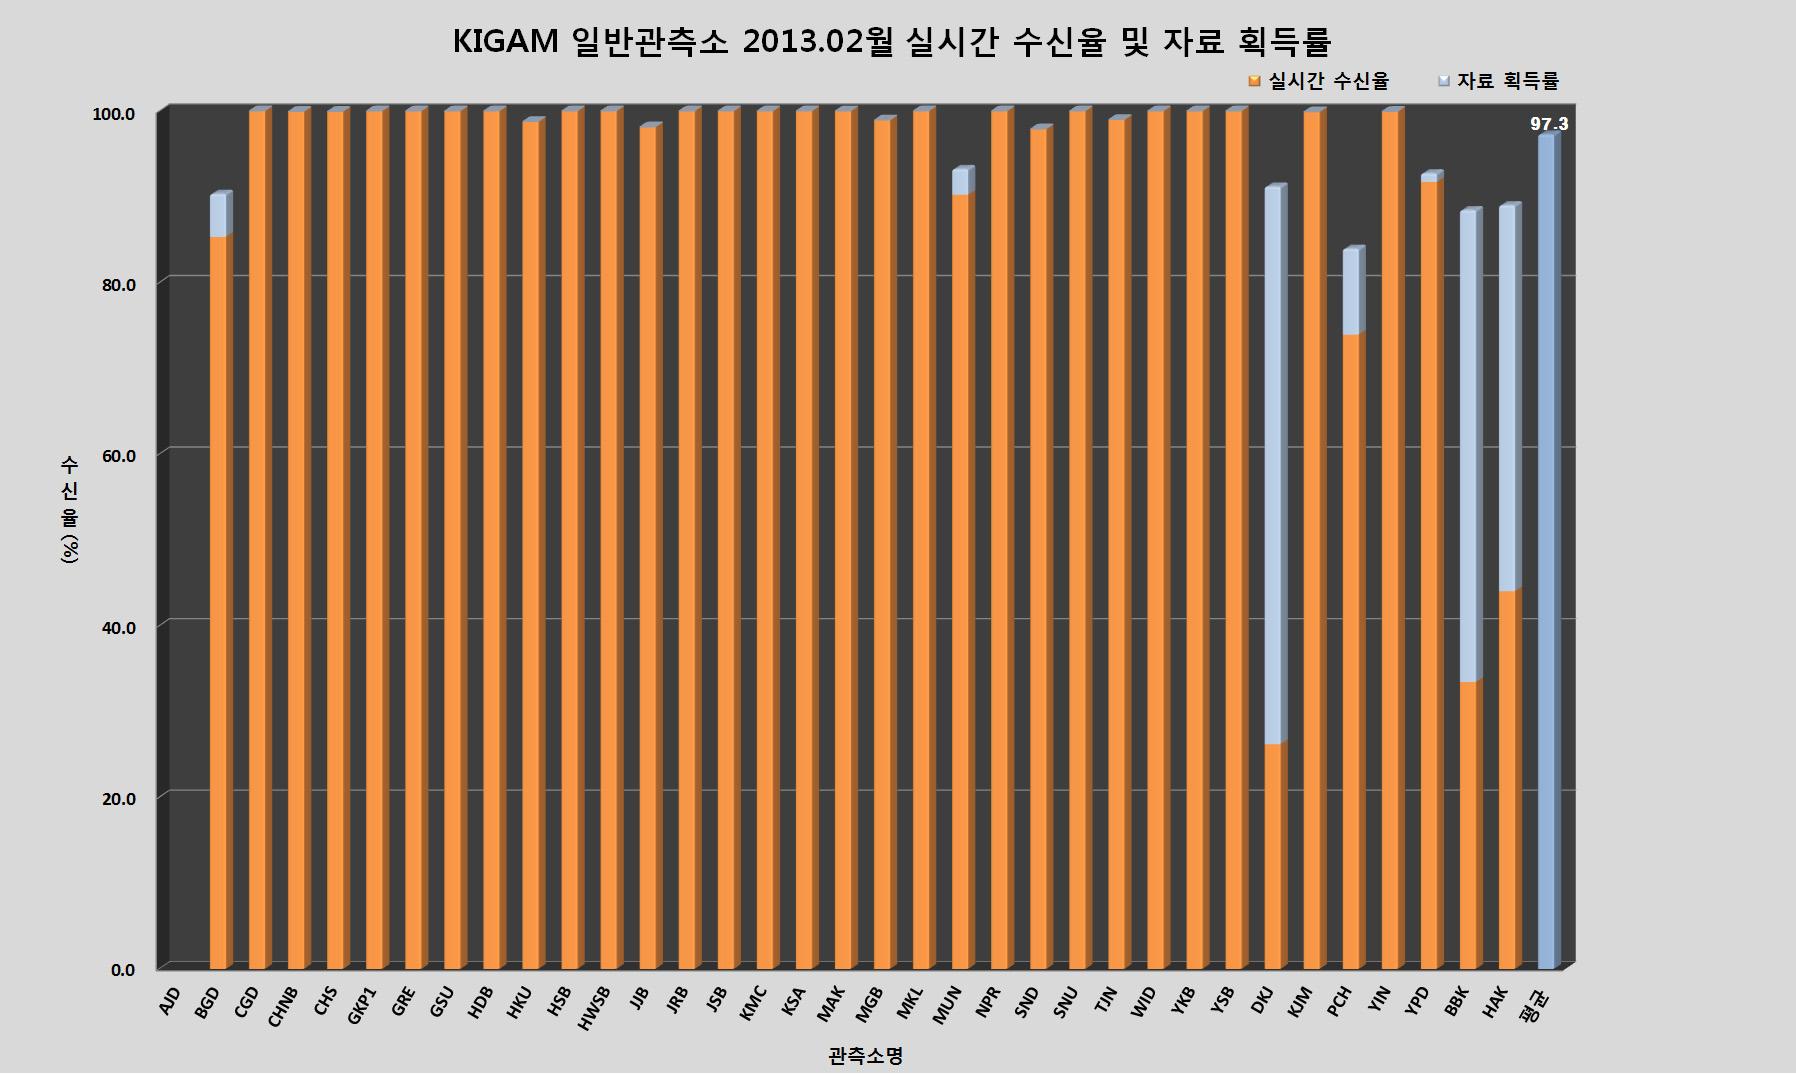 KIGAM 일반관측소 2013년 2월 실시간 수신율 및 자료 획득률